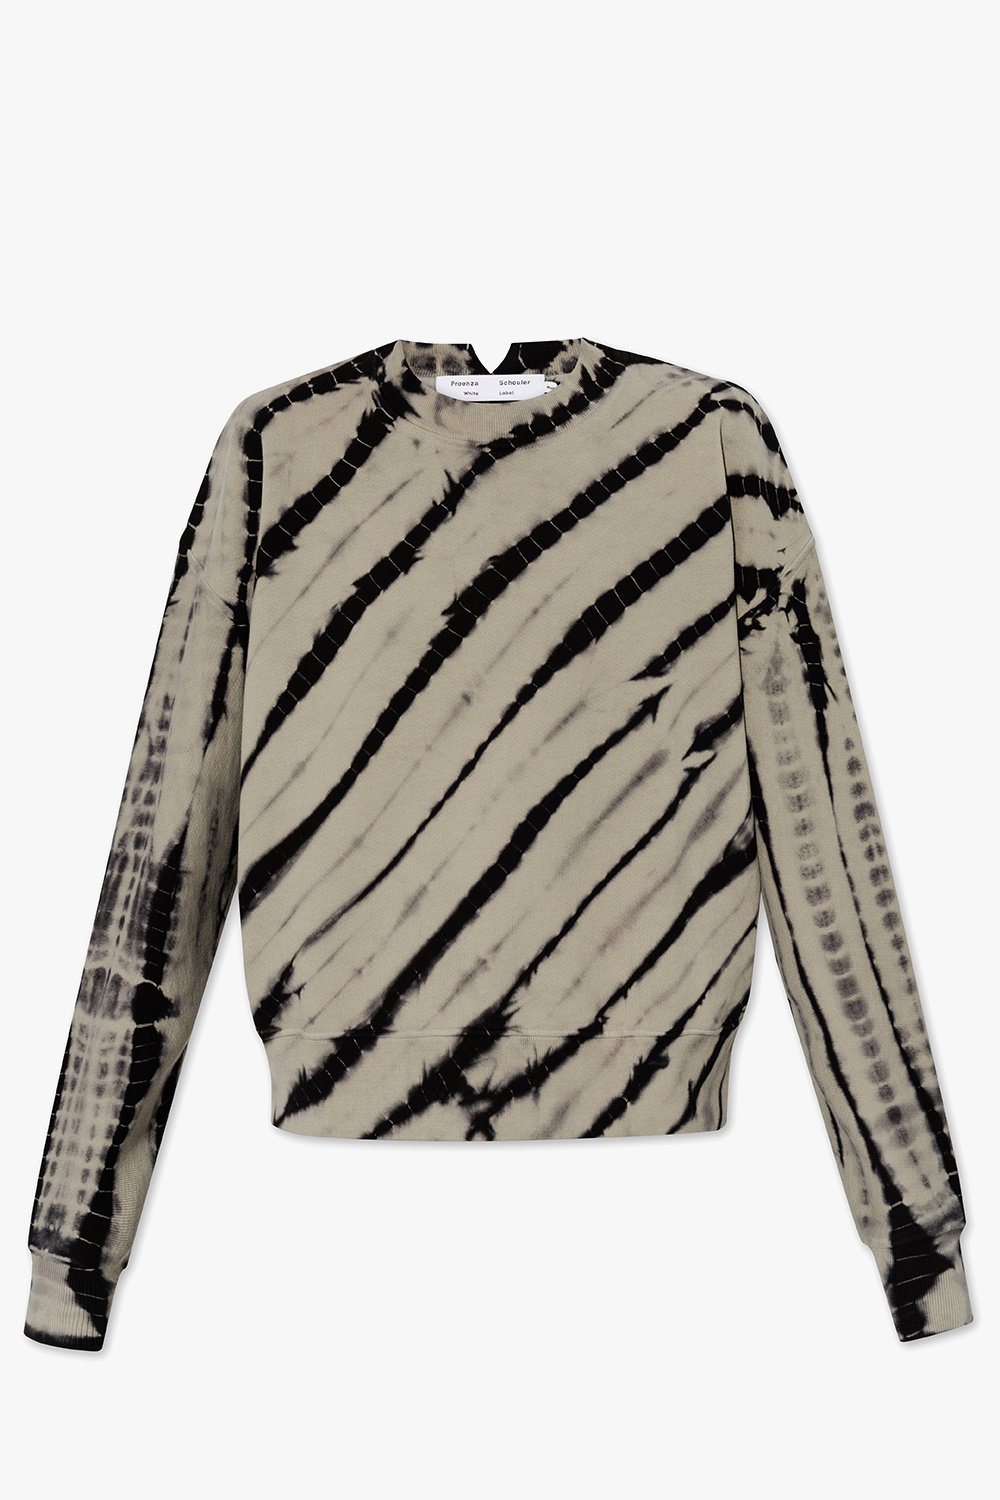 Proenza Schouler White Label Tie-dye effect sweatshirt